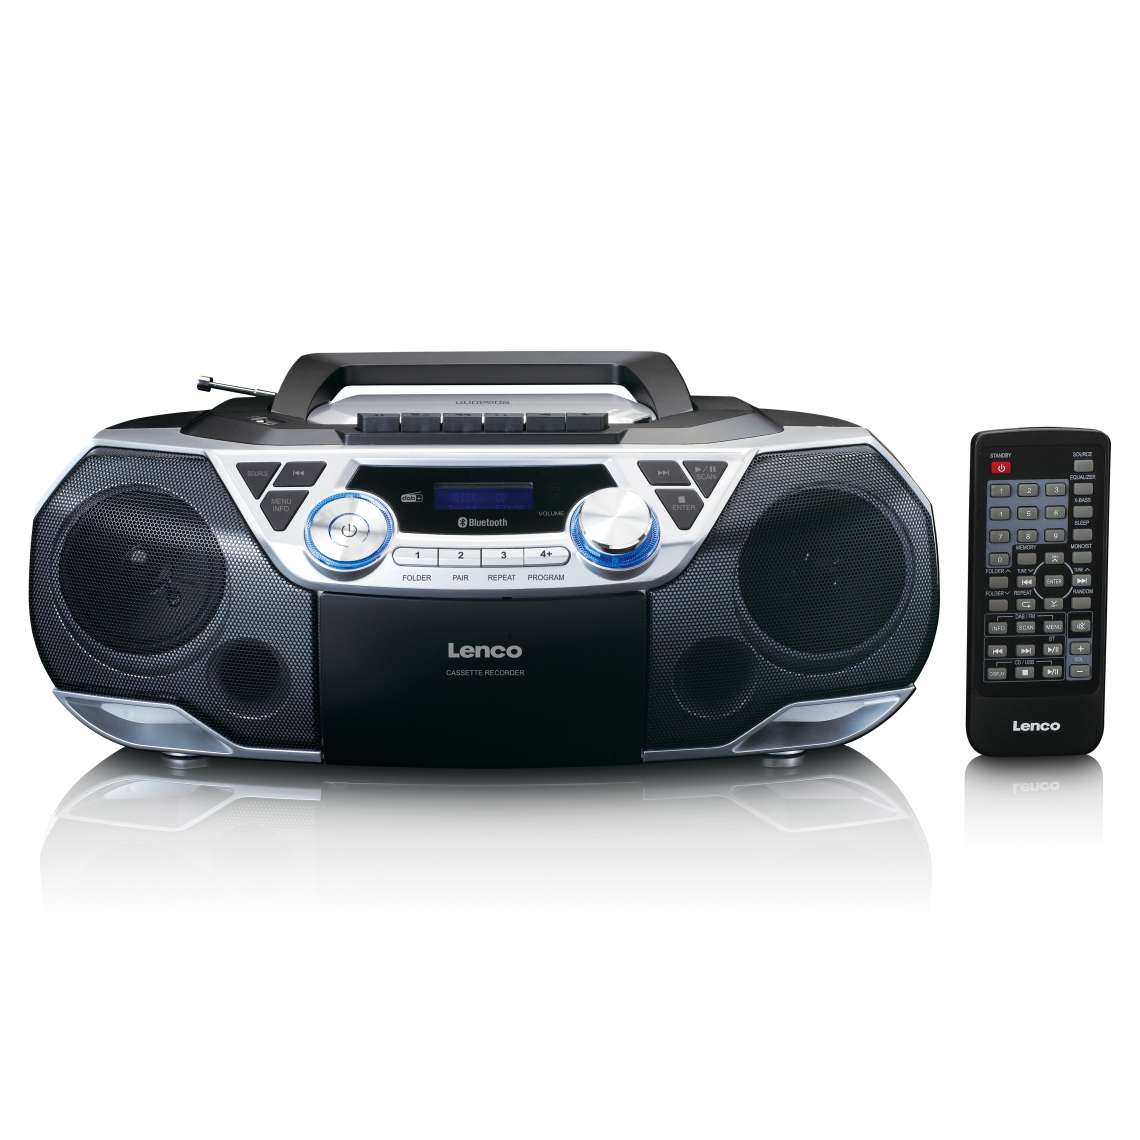 Lenco - Radio portable DAB+/FM avec Bluetooth, lecteur CD, cassettes et USB SCD-720SI Noir-Argent - Radio